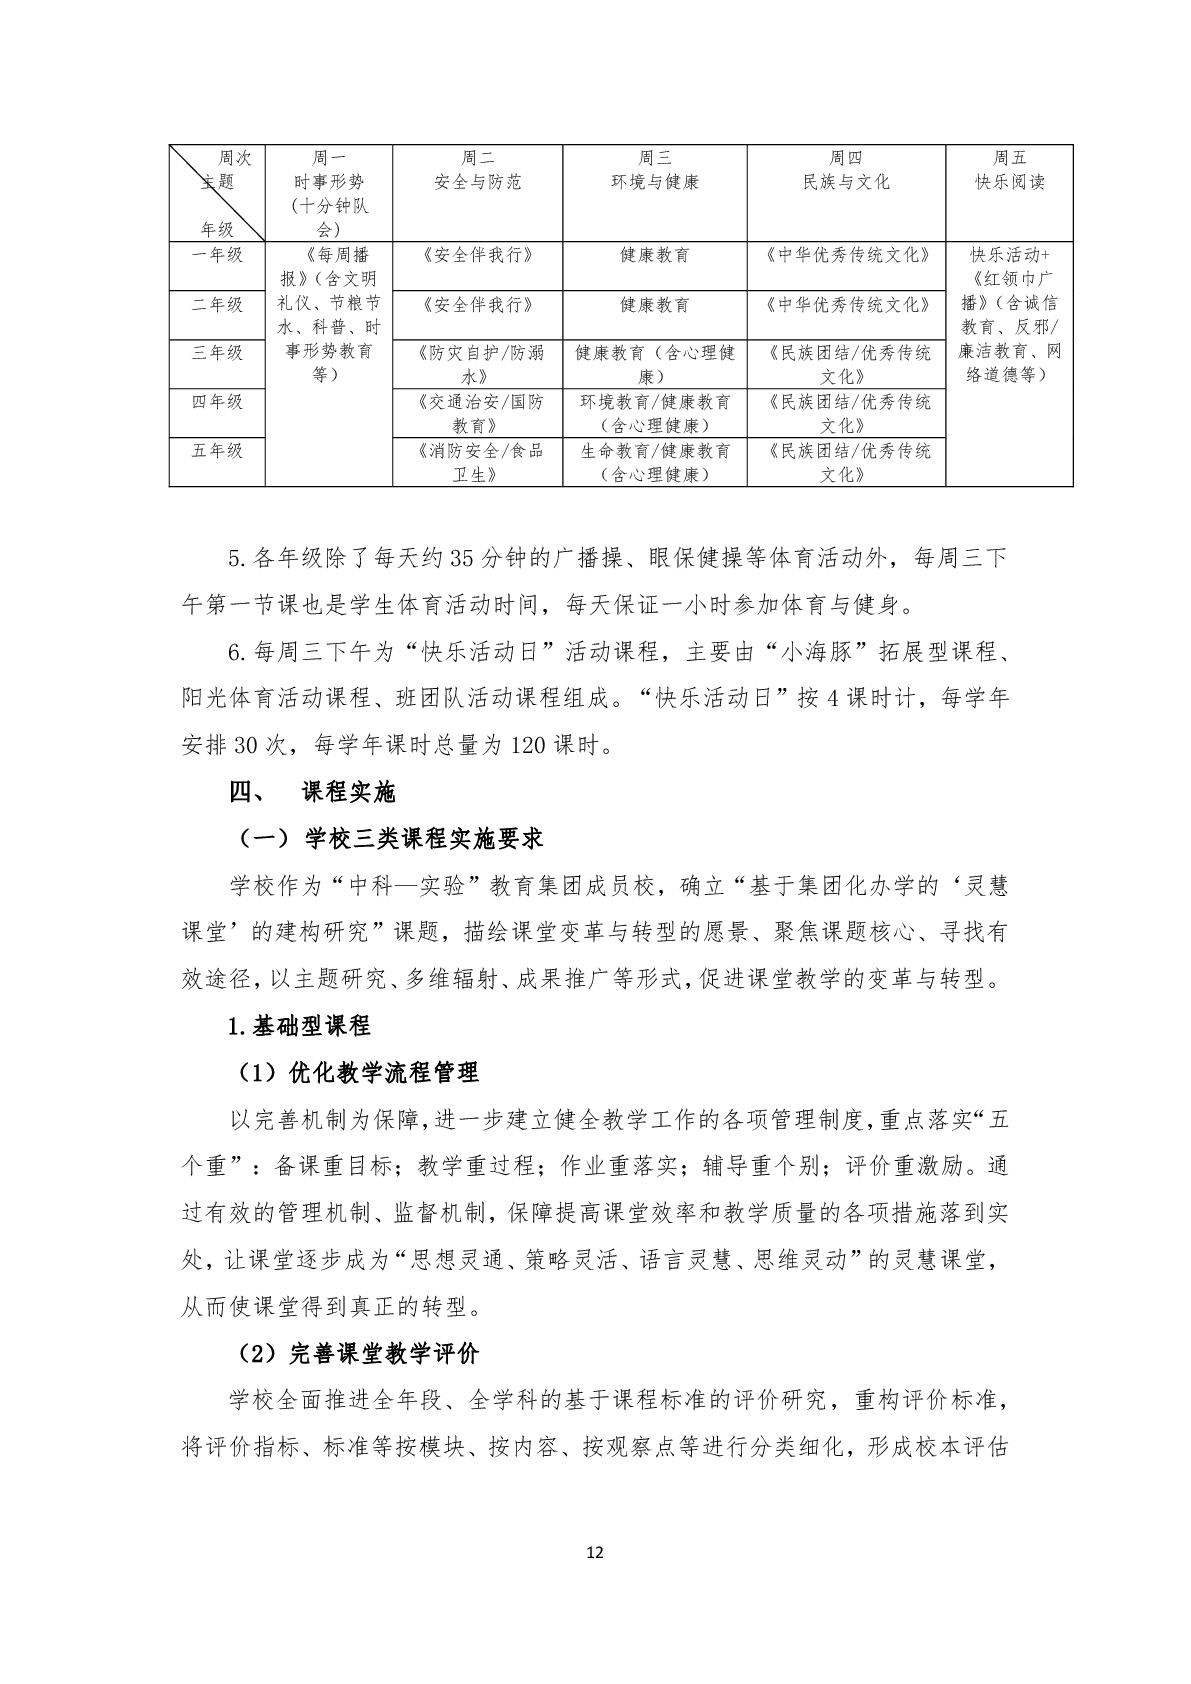 2.上海市嘉定区清水路小学2020学年度课程计划-012.jpg